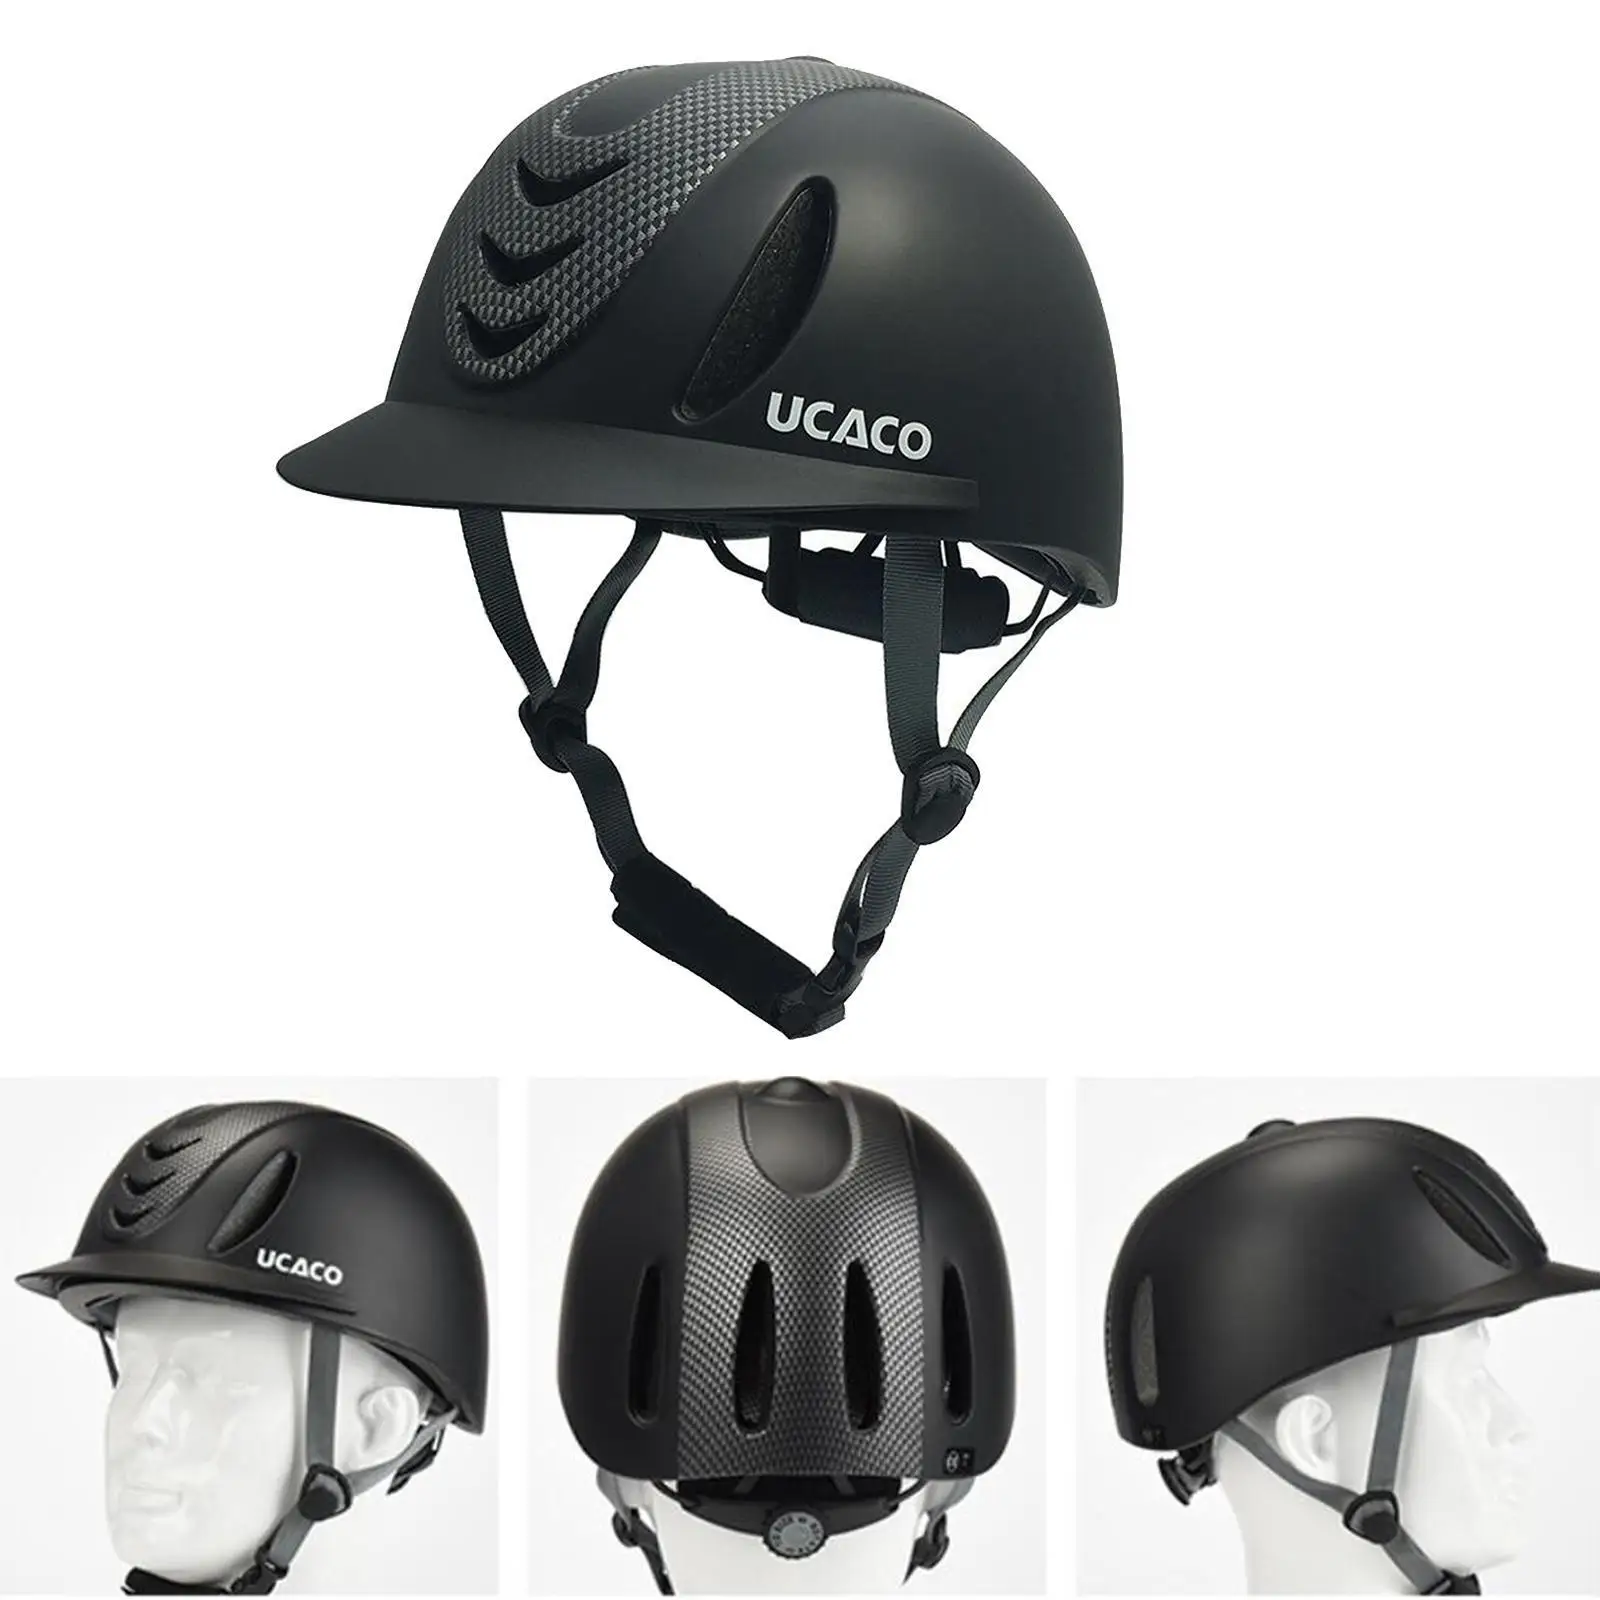 Стартовый шлем для верховой езды, защитный шлем старше 13 лет, полностью черный - 3